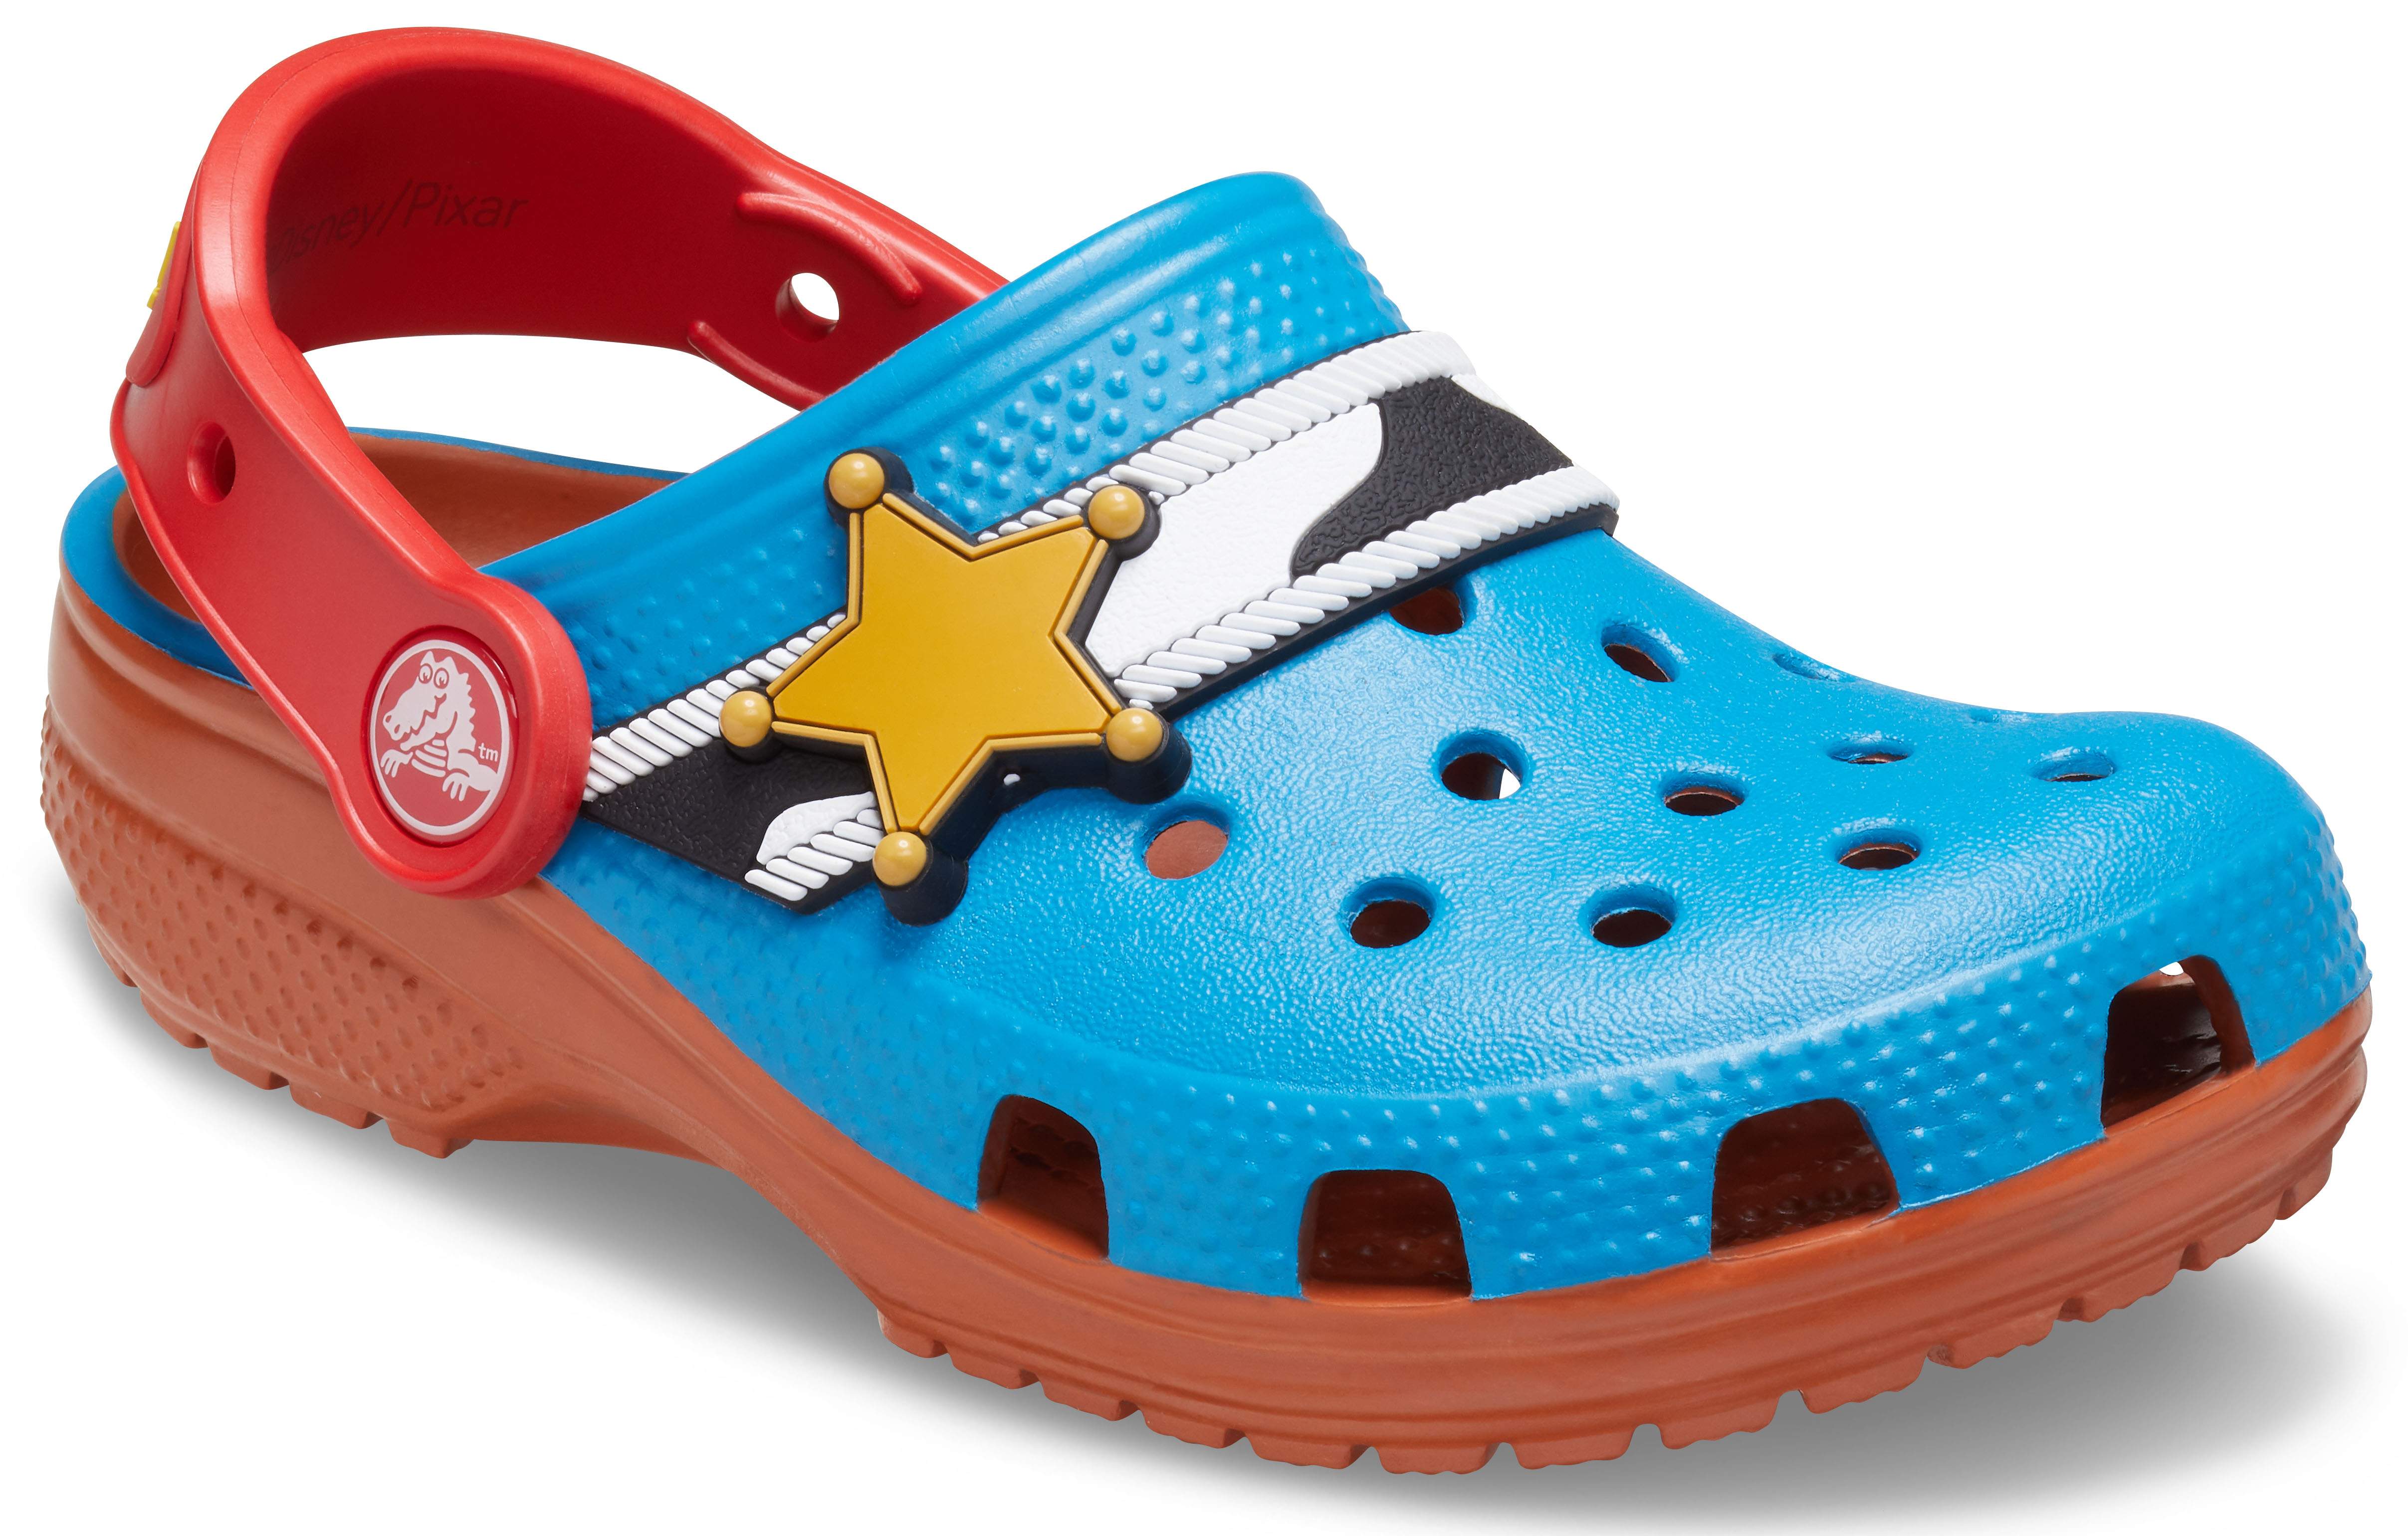 toy story crocs size 8 9